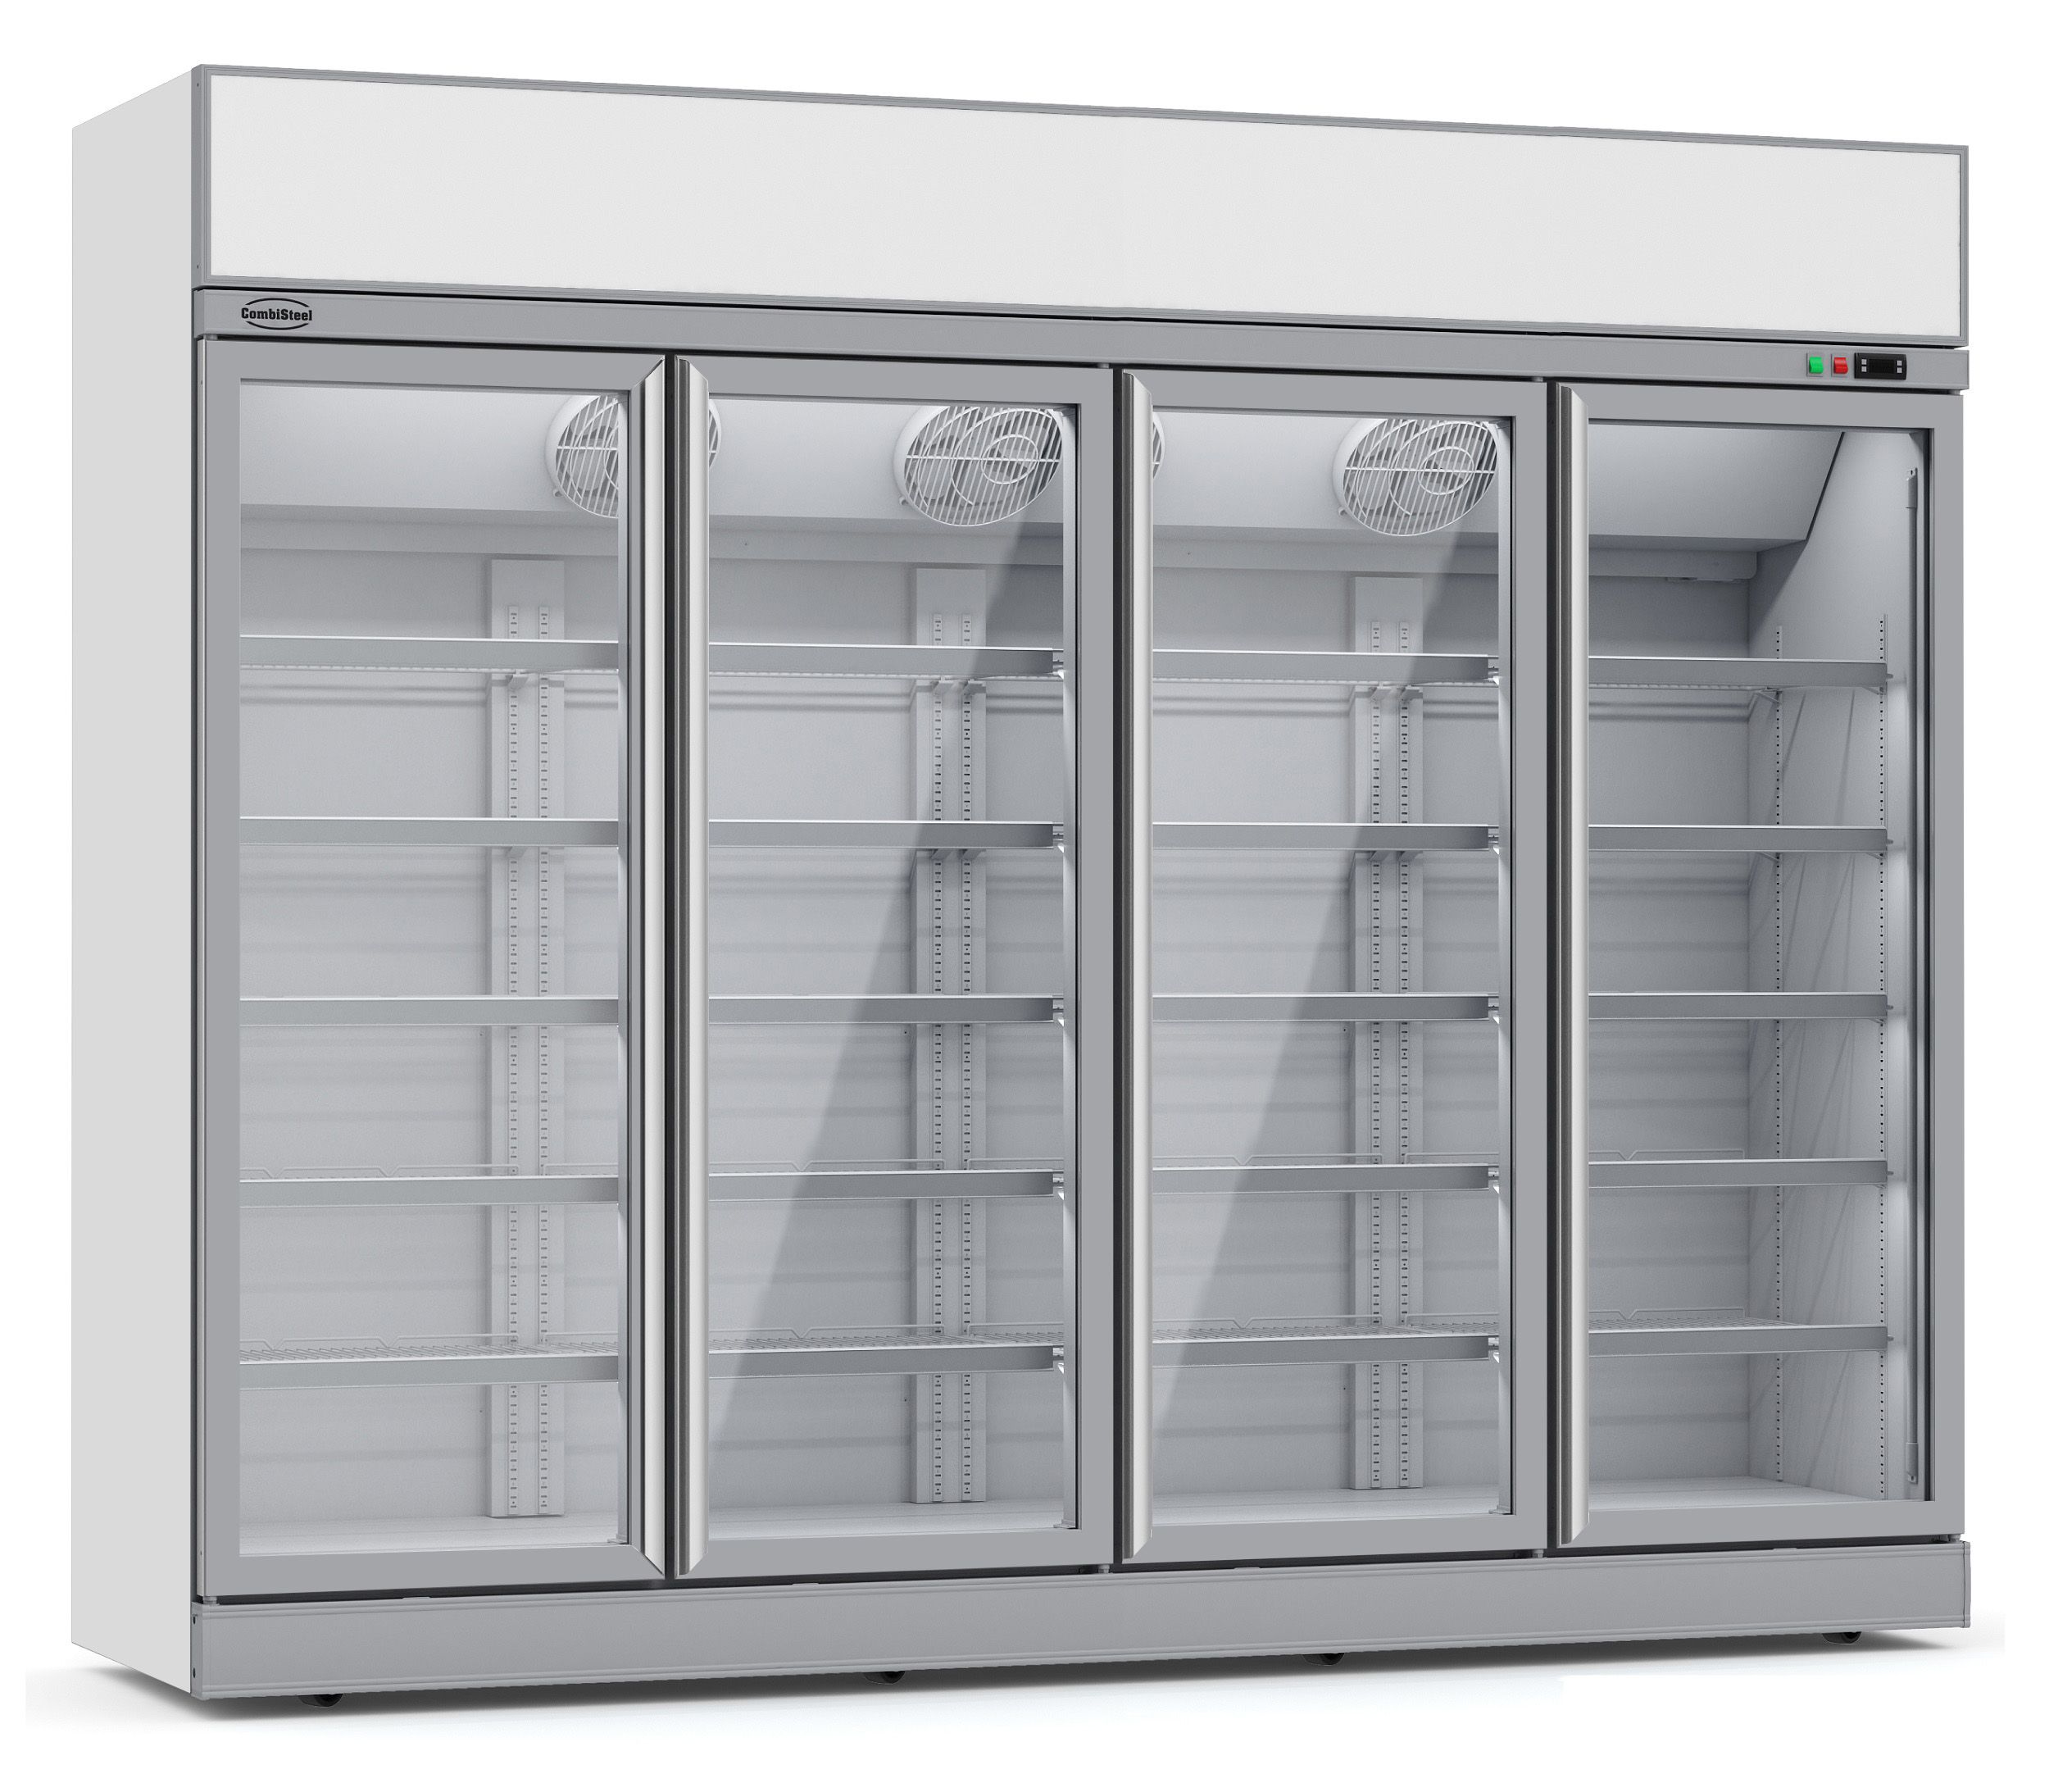 CombiSteel Freezer 4 Glass Doors INS-2060F Display Freezer